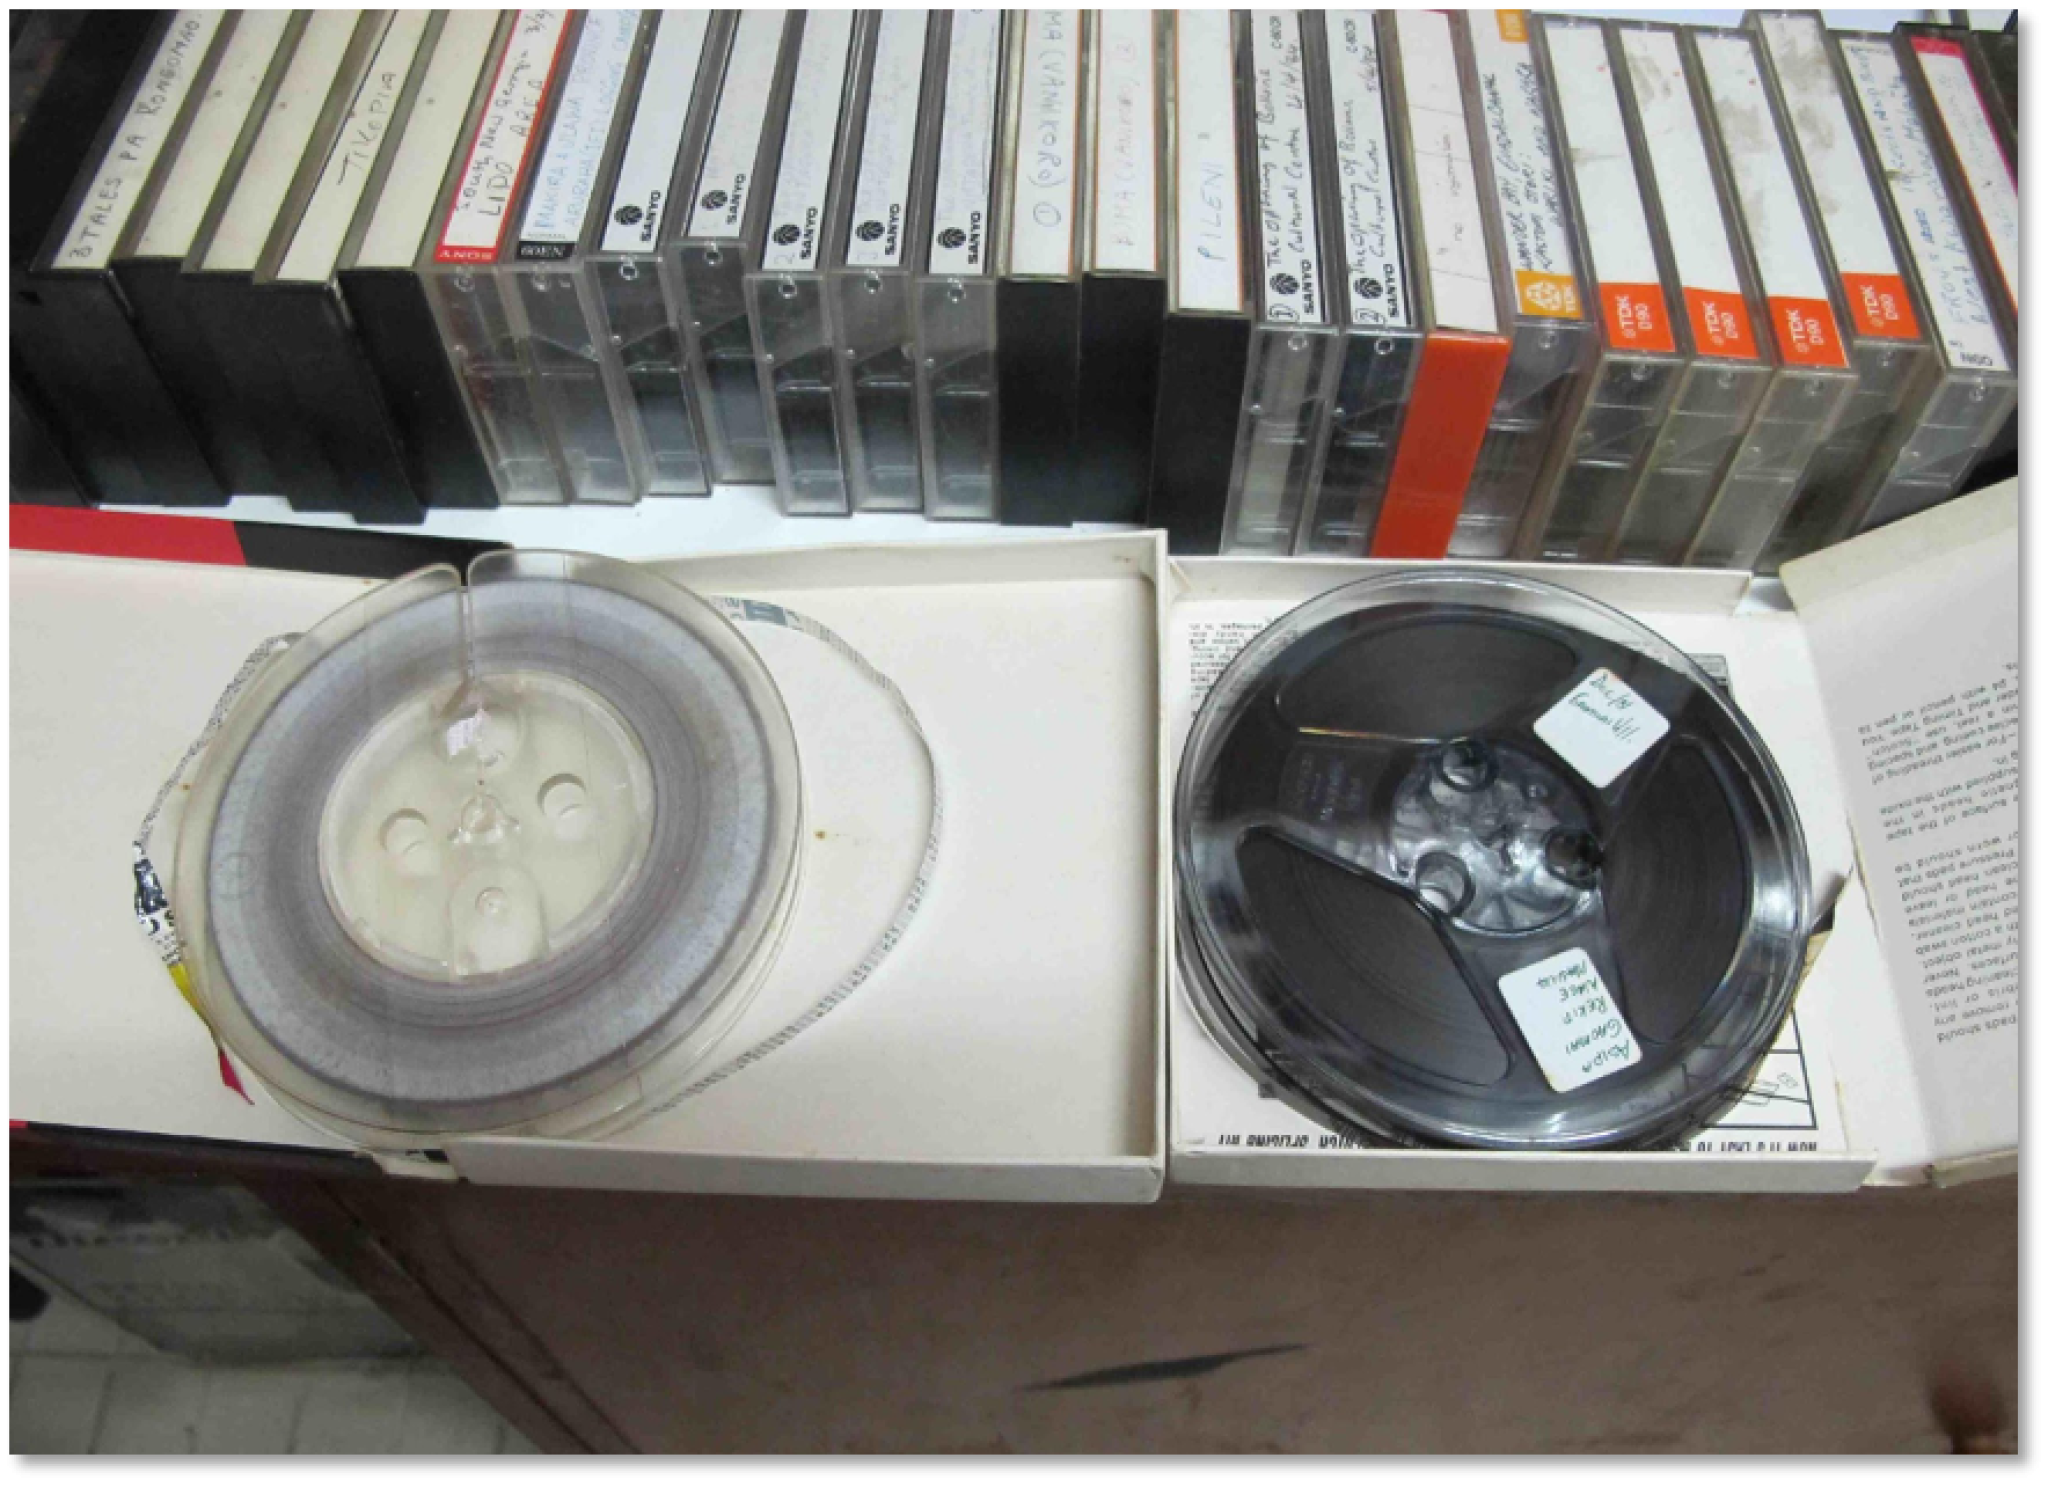 Old tapes for digitisation